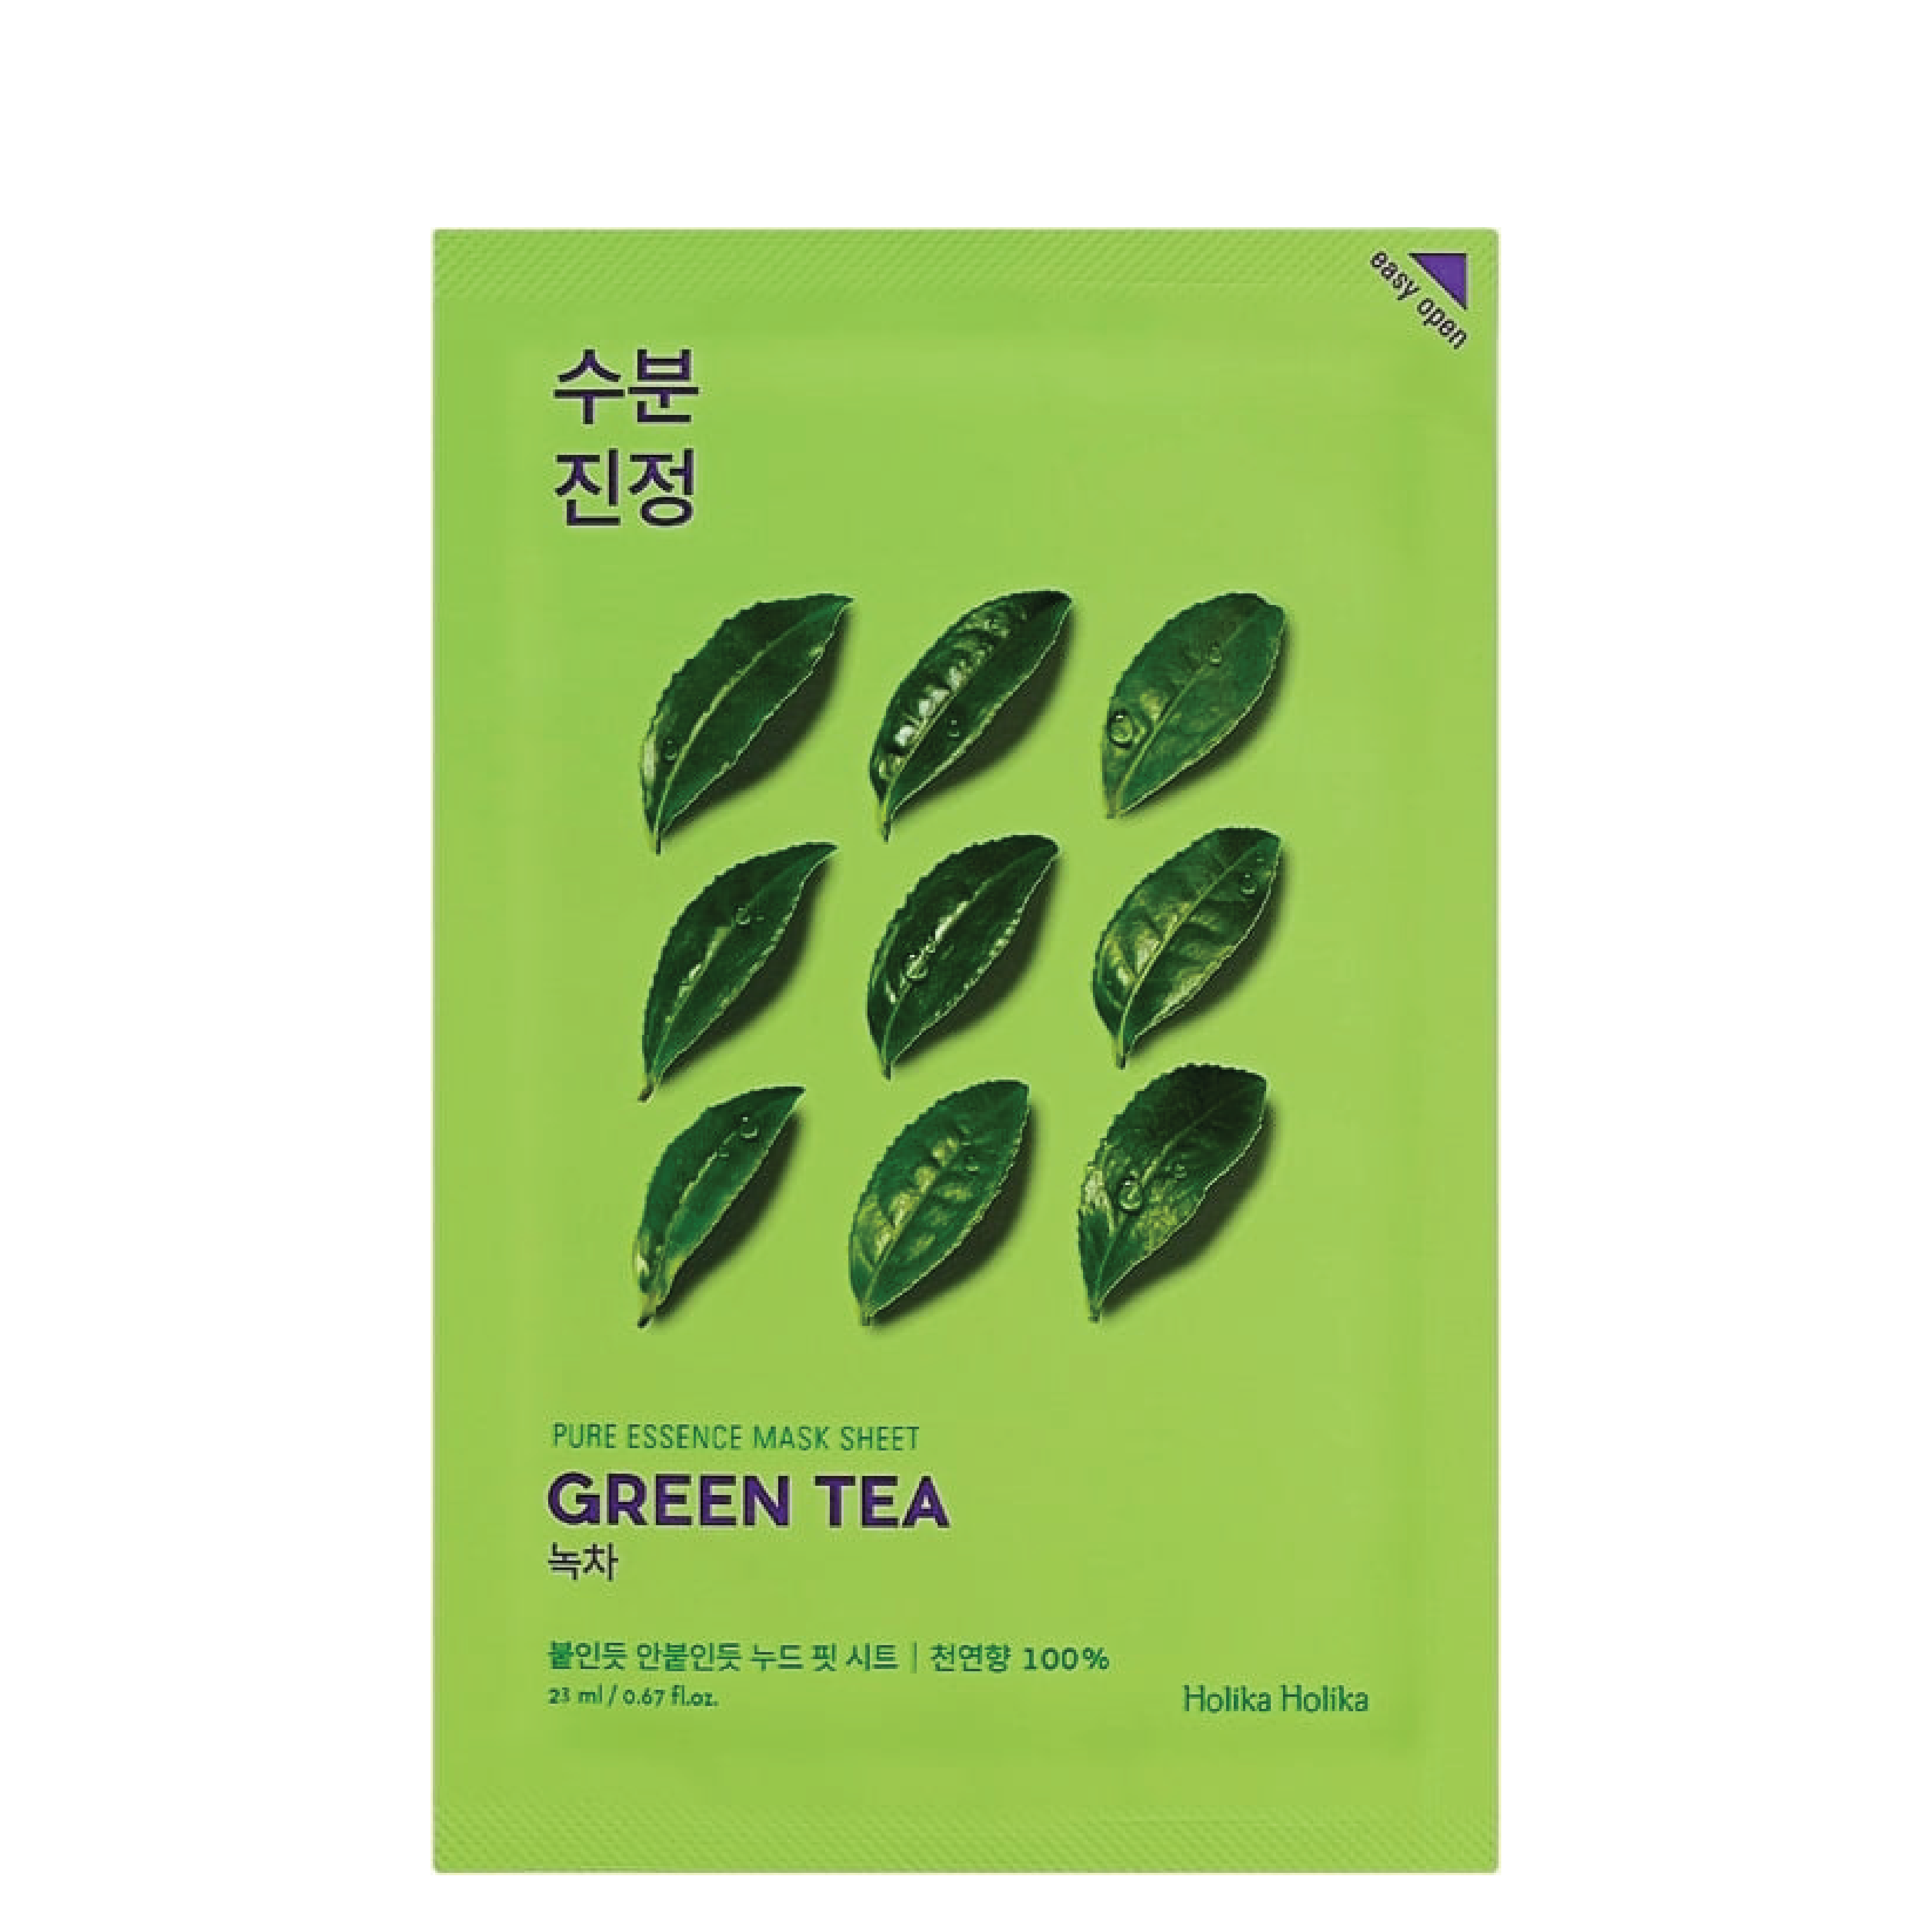 Holika Holika Green Tea Pure Essence Mask